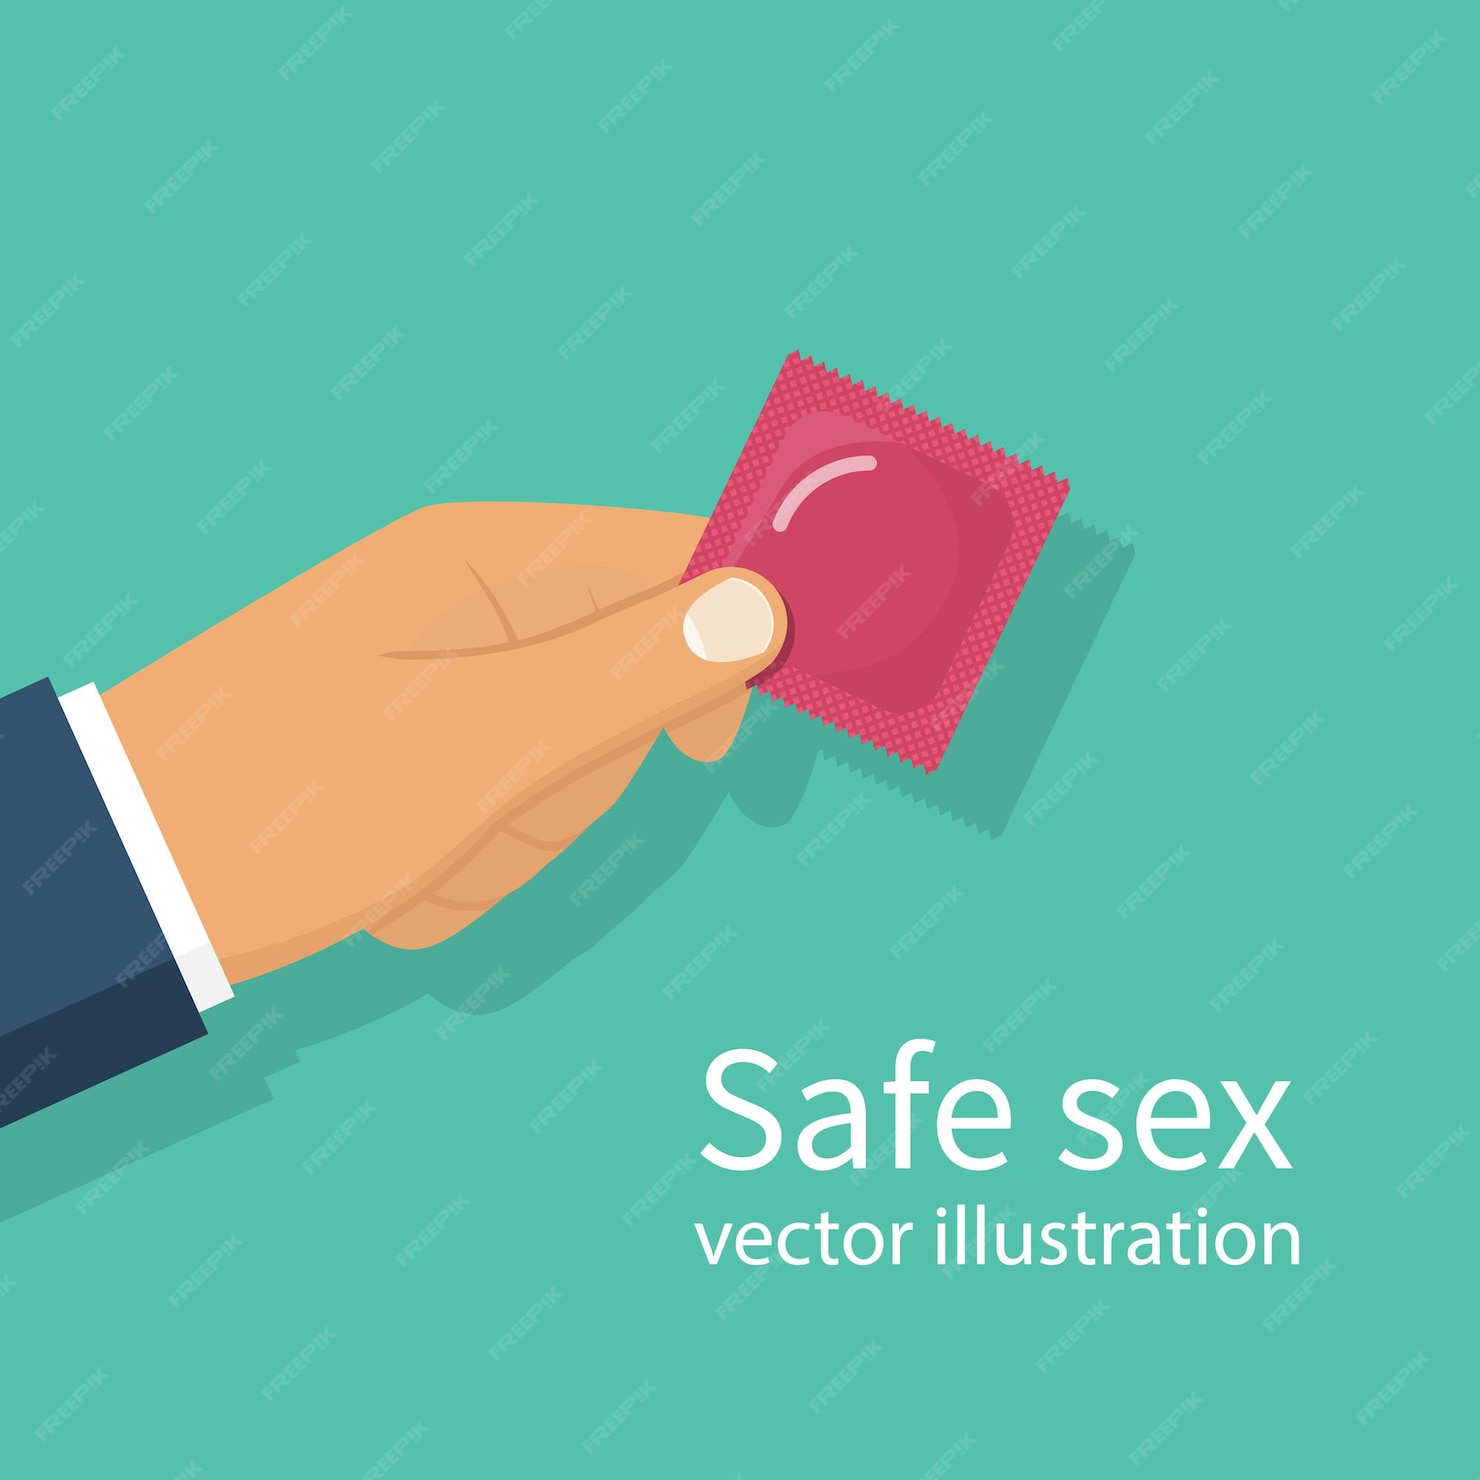 Hombre Sosteniendo Un Condón En La Mano Concepto Sexo Seguro Estilo De Vida Saludable 6750